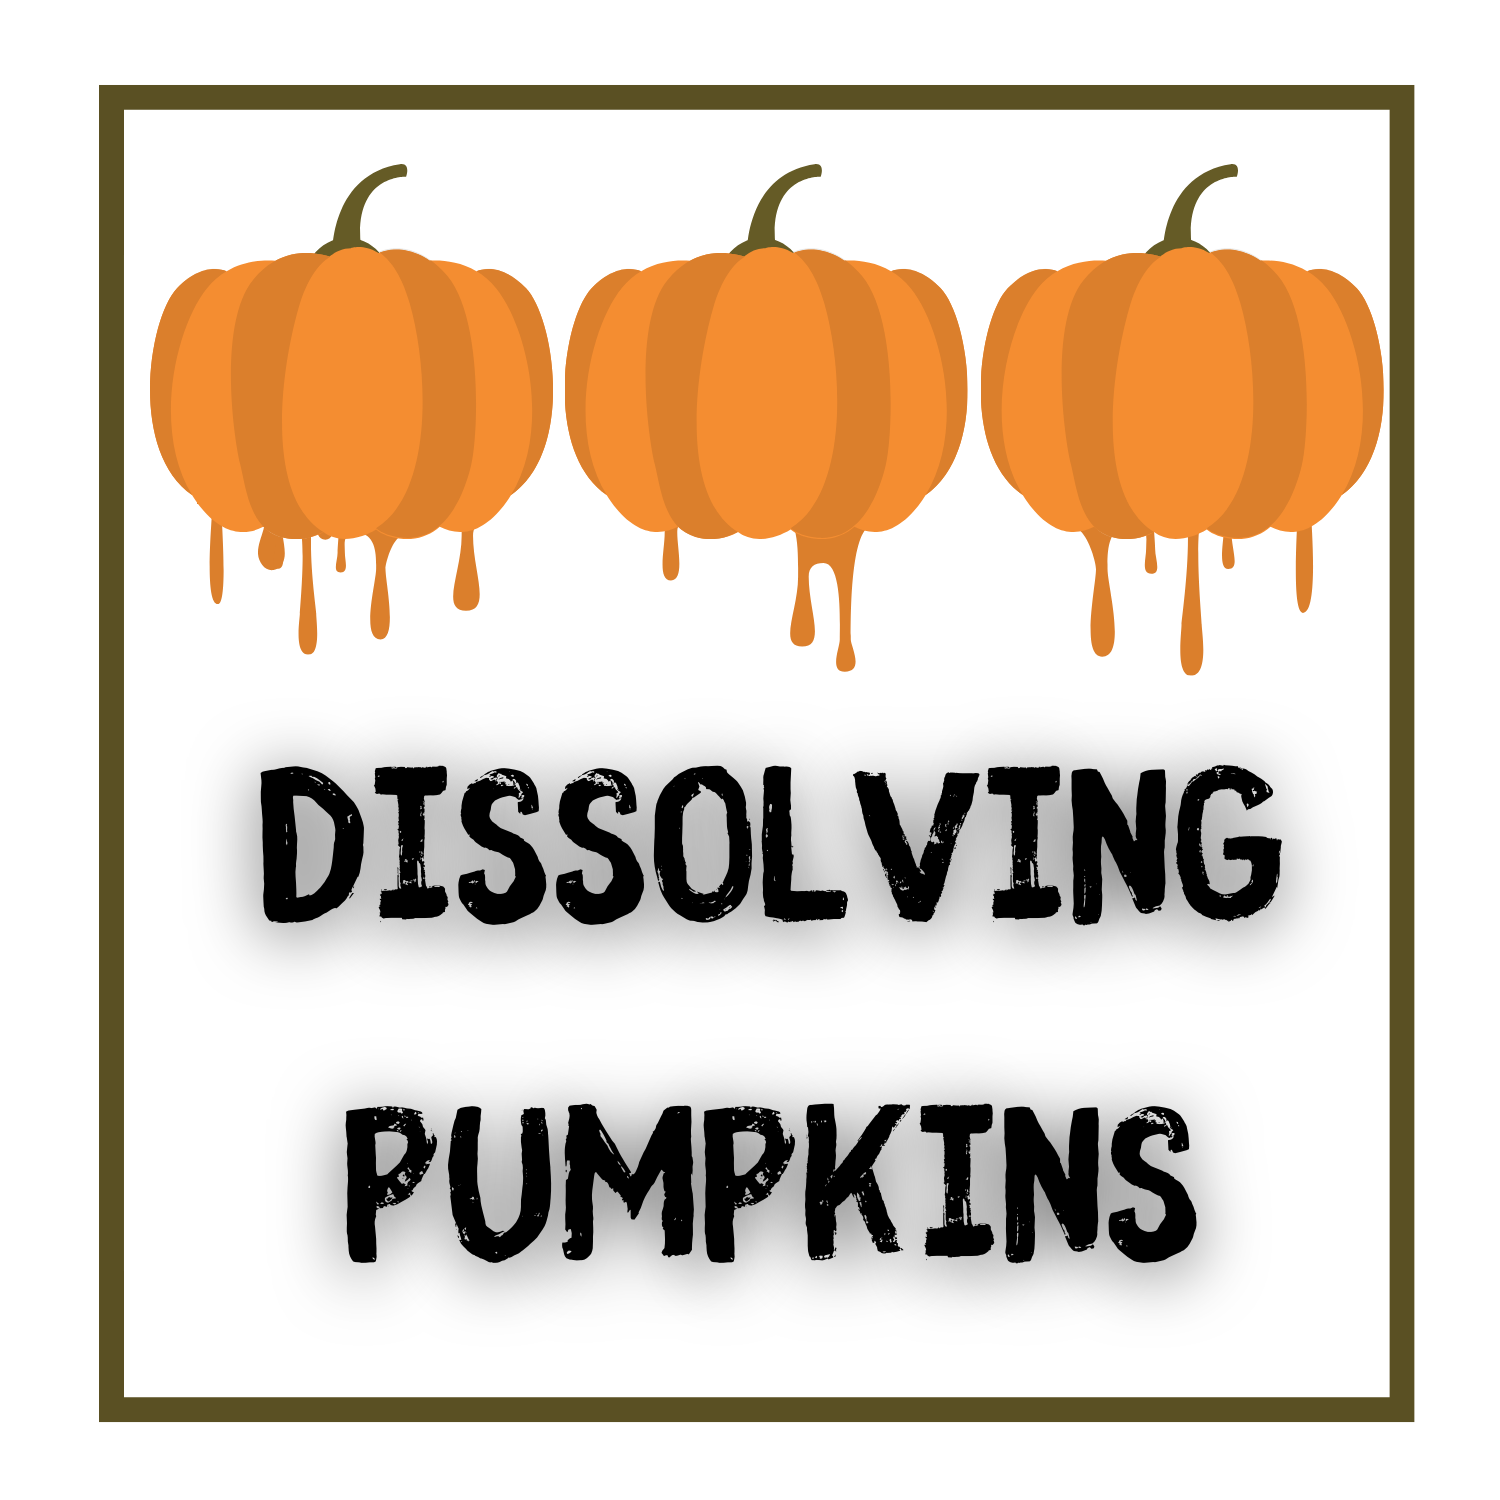 Dissolving pumpkins